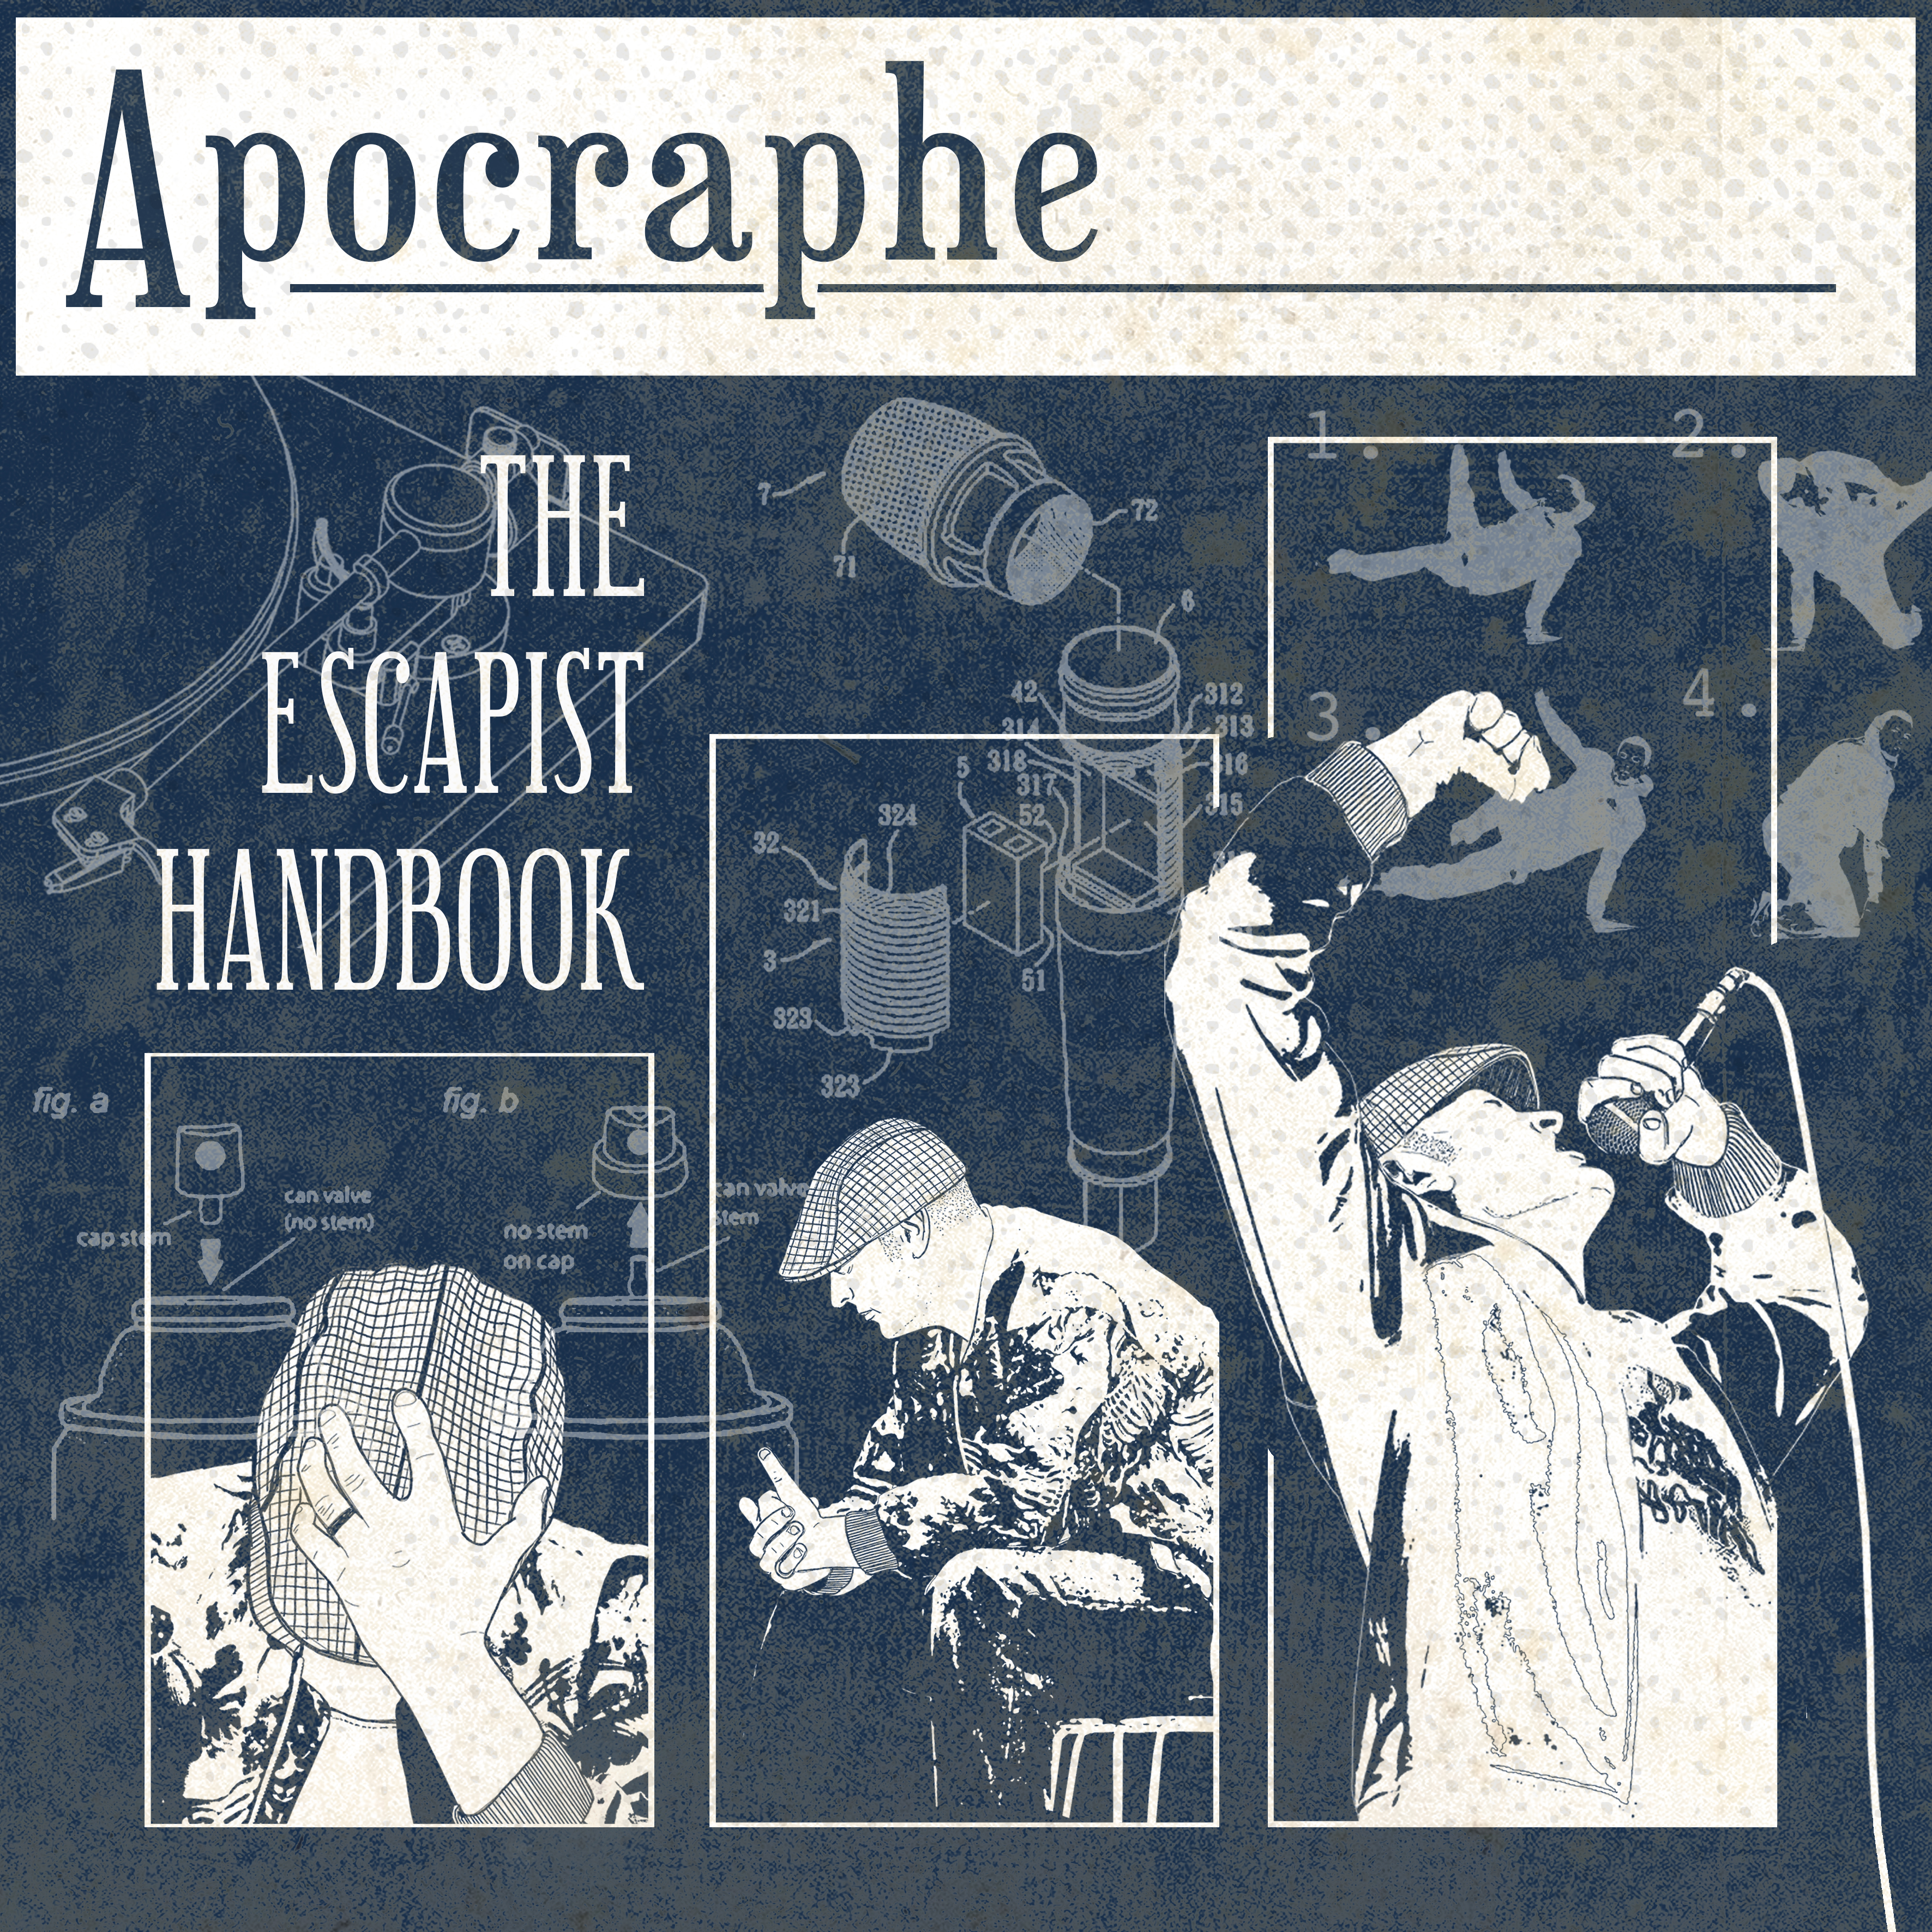 Apocraphe – The Escapist Handbook